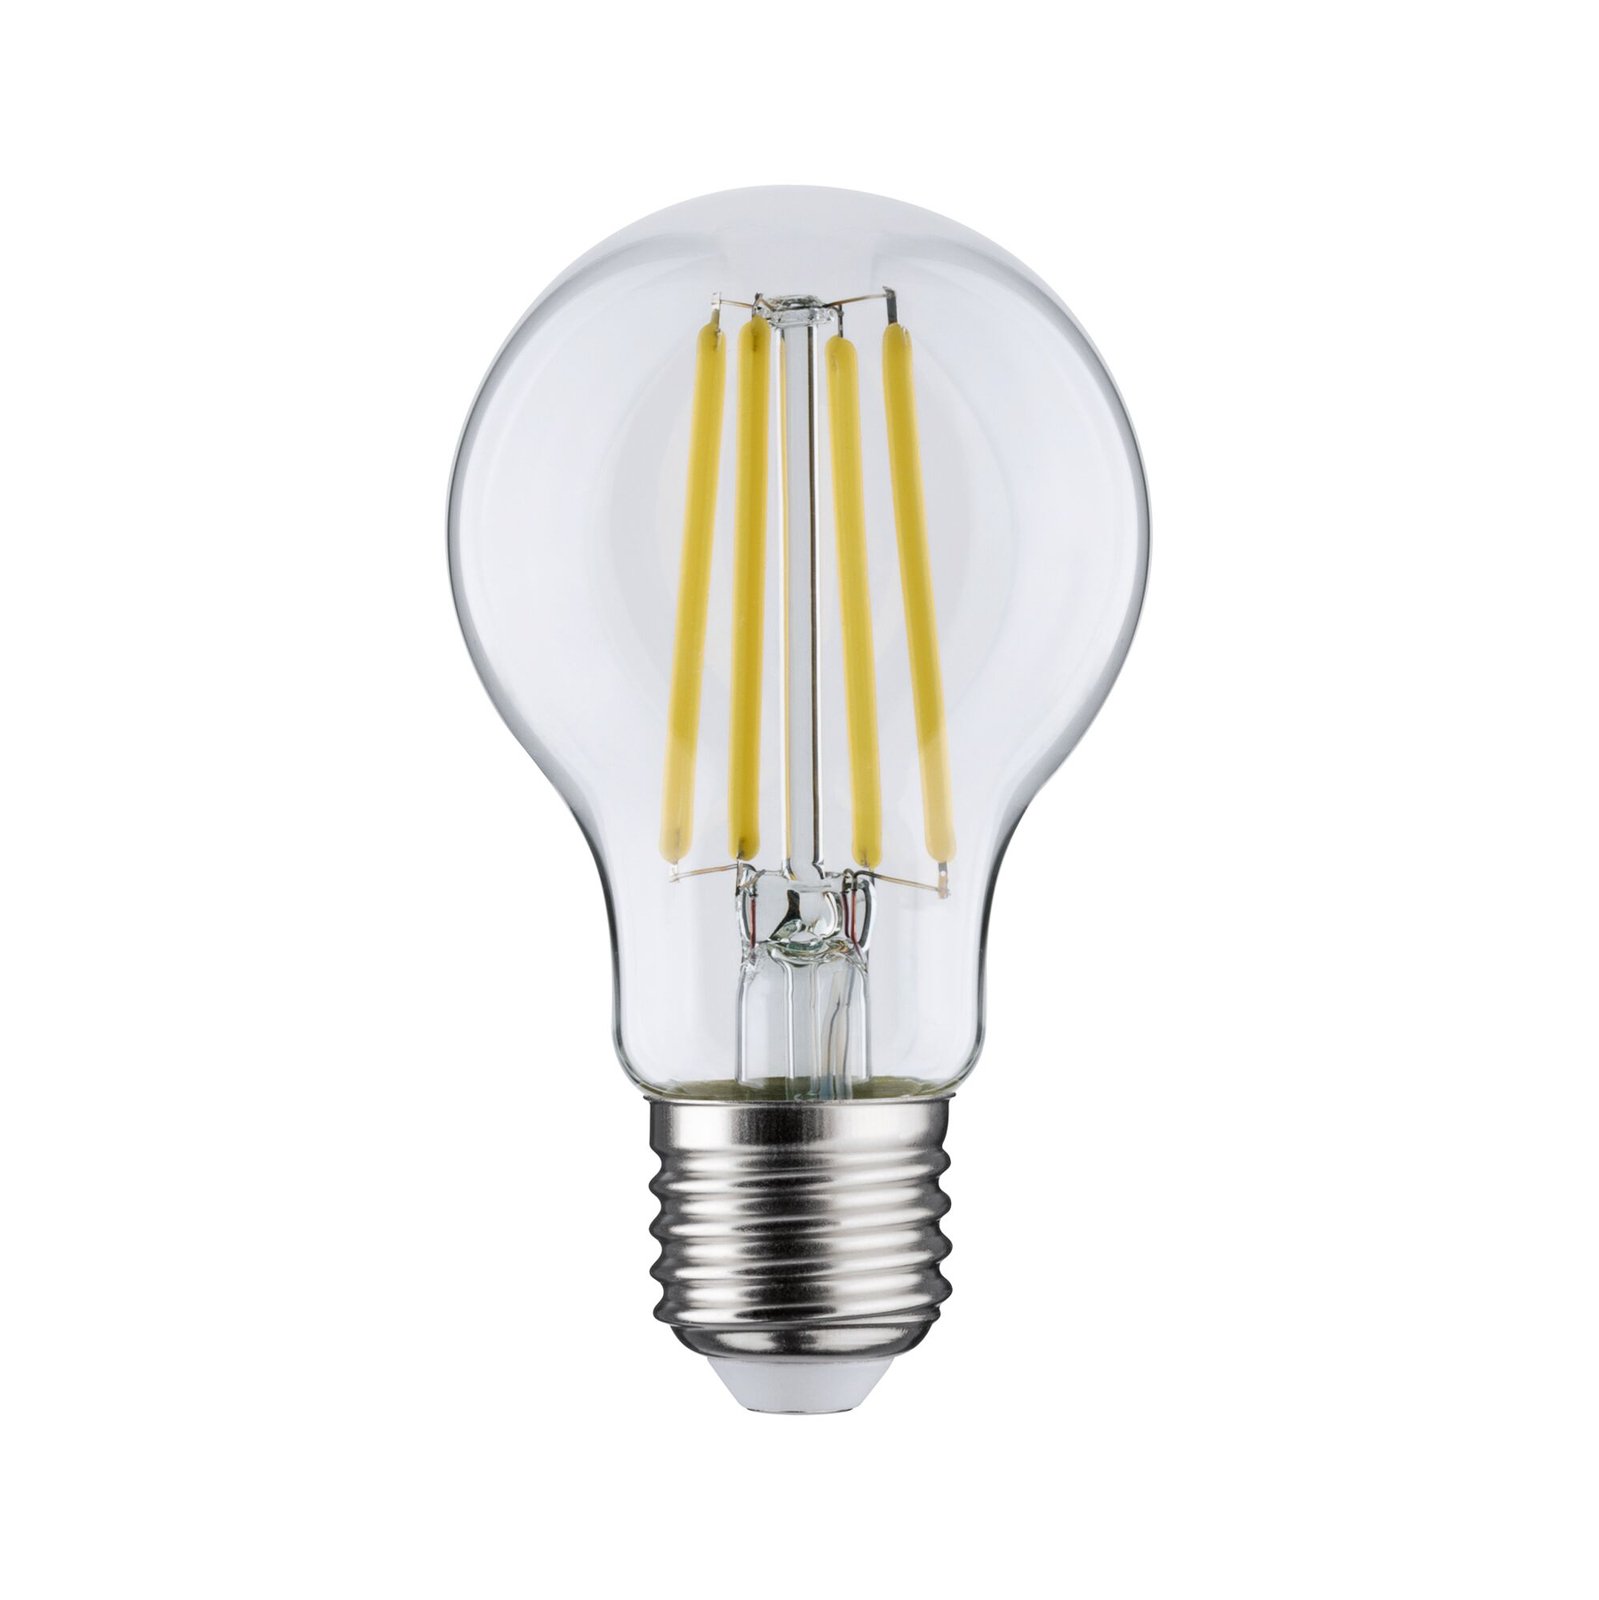 Paulmann Eco-Line LED-Lampe E27 2,5W 525lm 4.000K